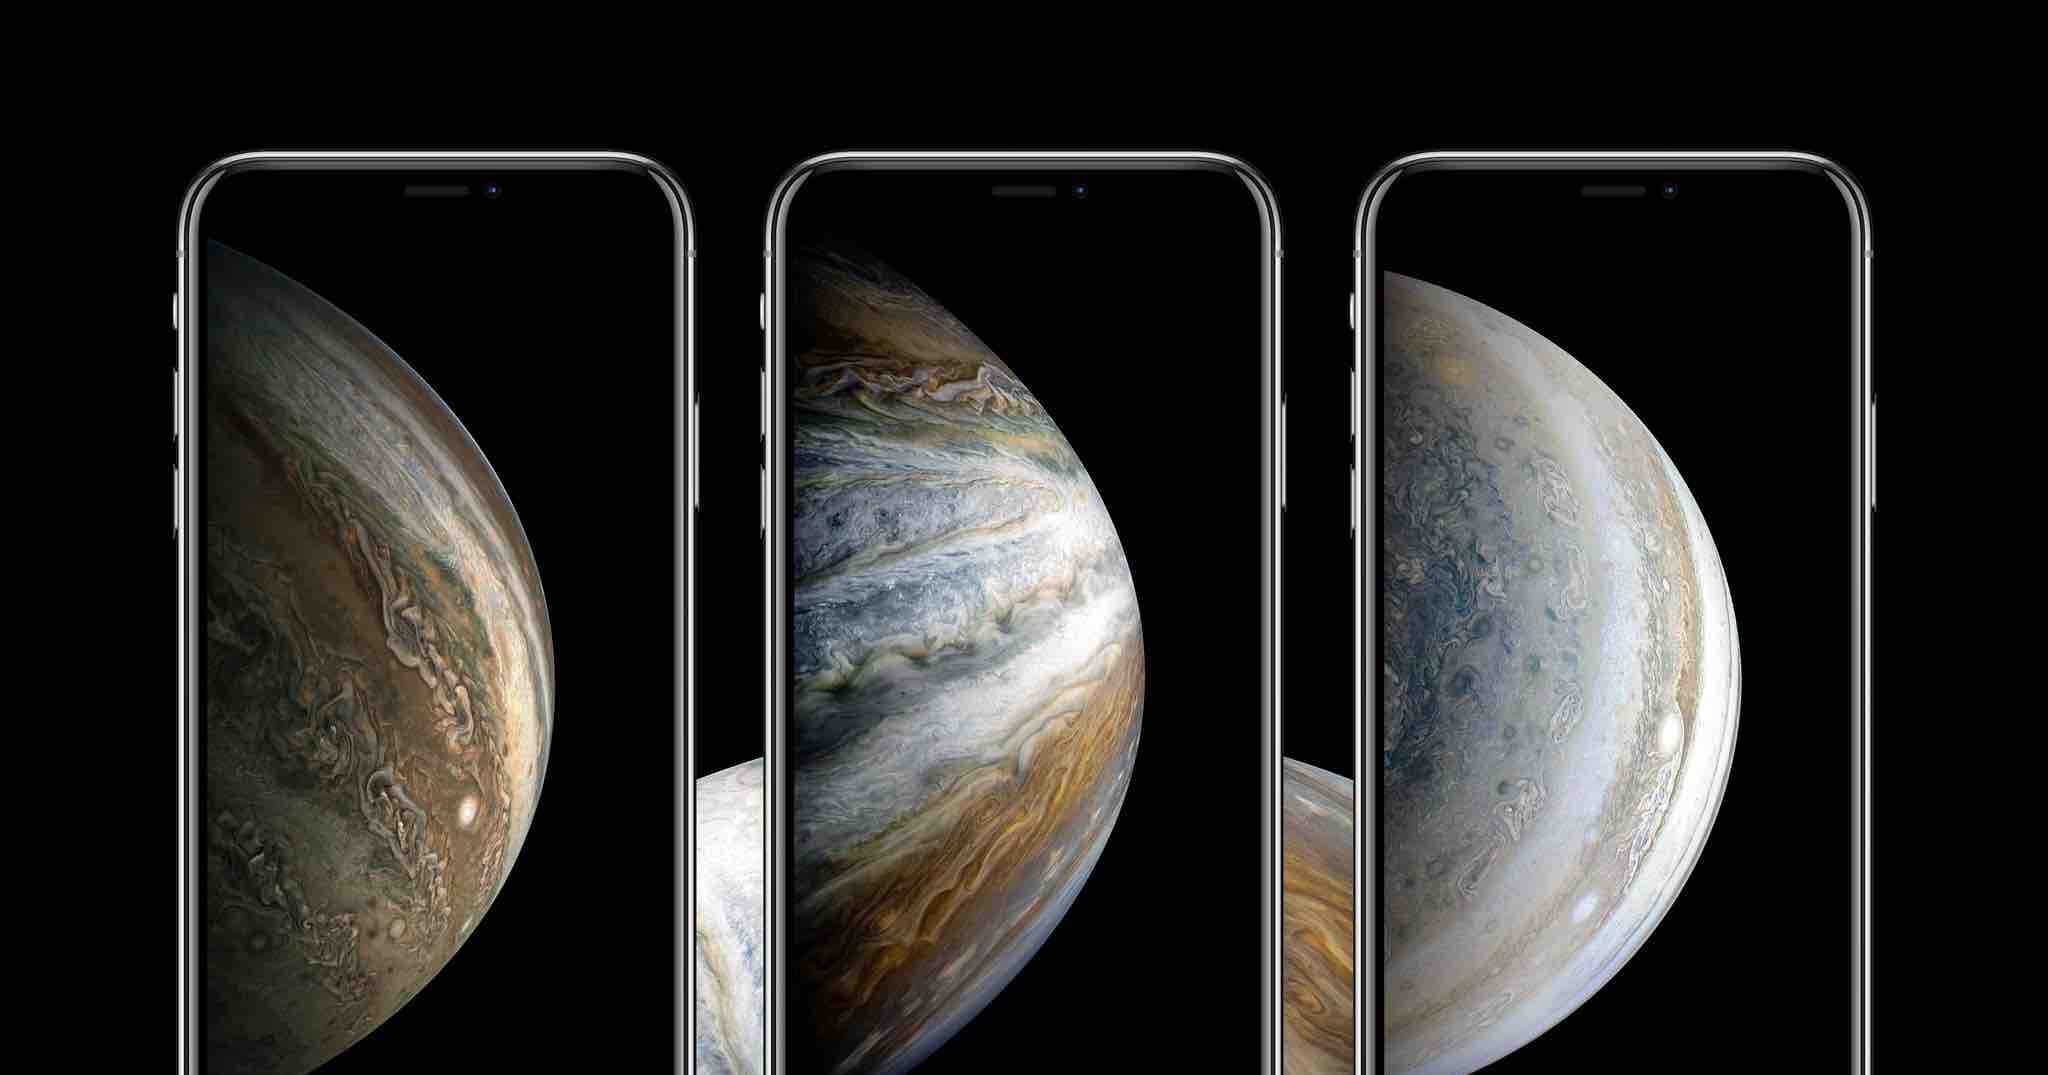 Hình nền sao Mộc iPhone XS và XS Plus là sự kết hợp hoàn hảo giữa thiên văn học và công nghệ điện thoại. Với những hình ảnh bầu trời đầy ngẫu hứng và những đường nét hoàn hảo của iPhone XS và XS Plus, bạn sẽ cảm thấy thoải mái và thư giãn mỗi khi nhìn vào màn hình điện thoại của mình.